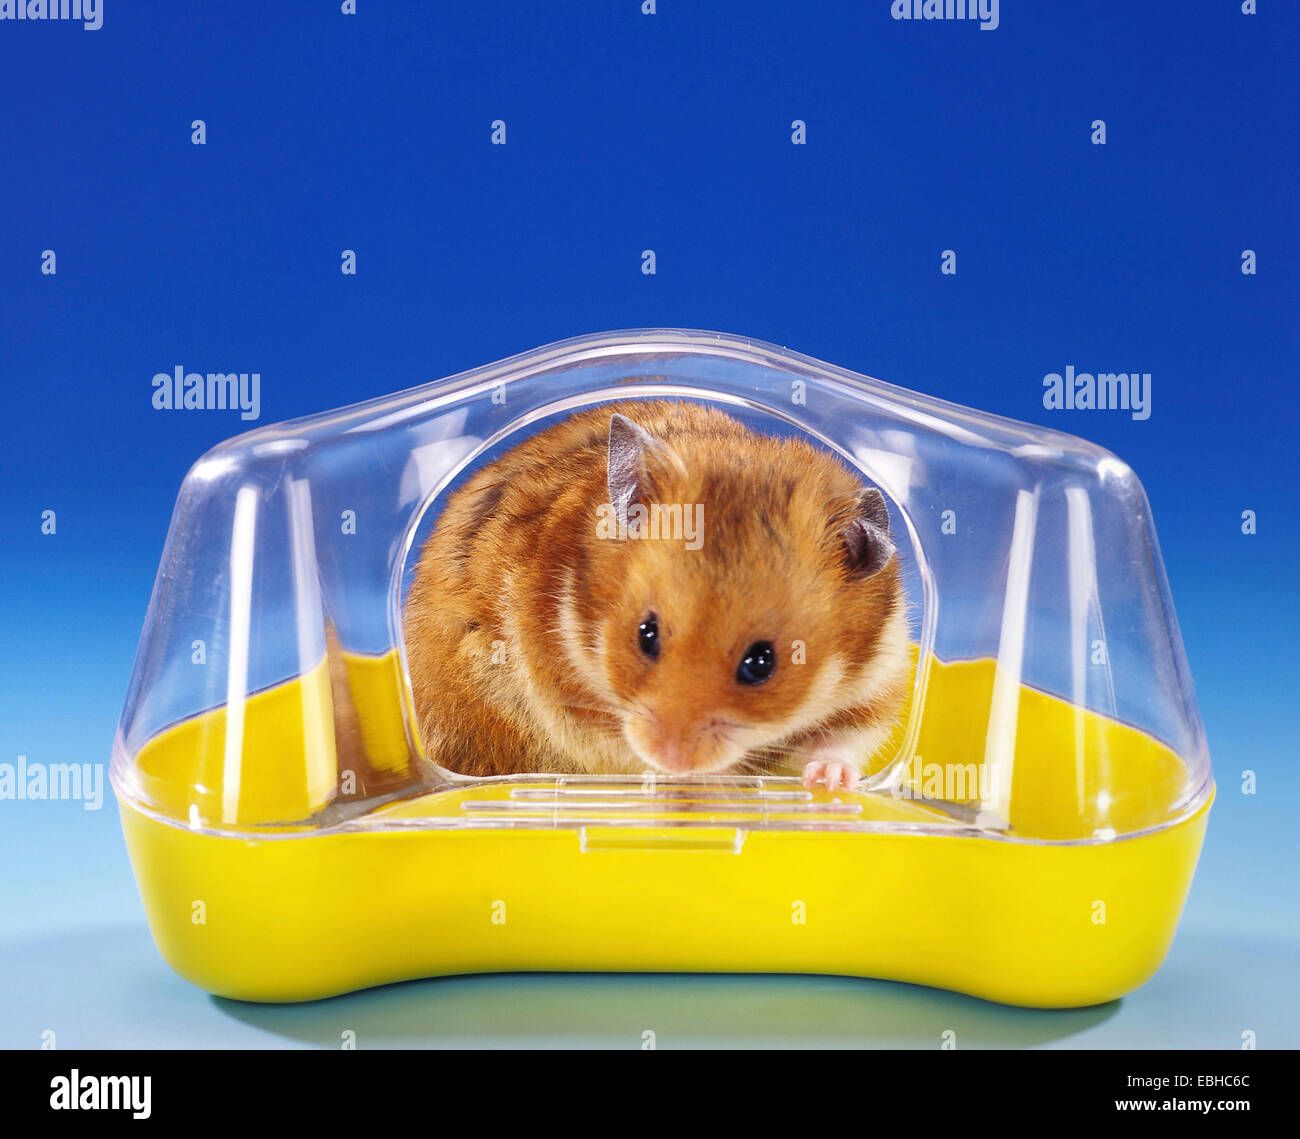 Hamster doré (Mesocricetus auratus), dans une maison de bains Banque D'Images